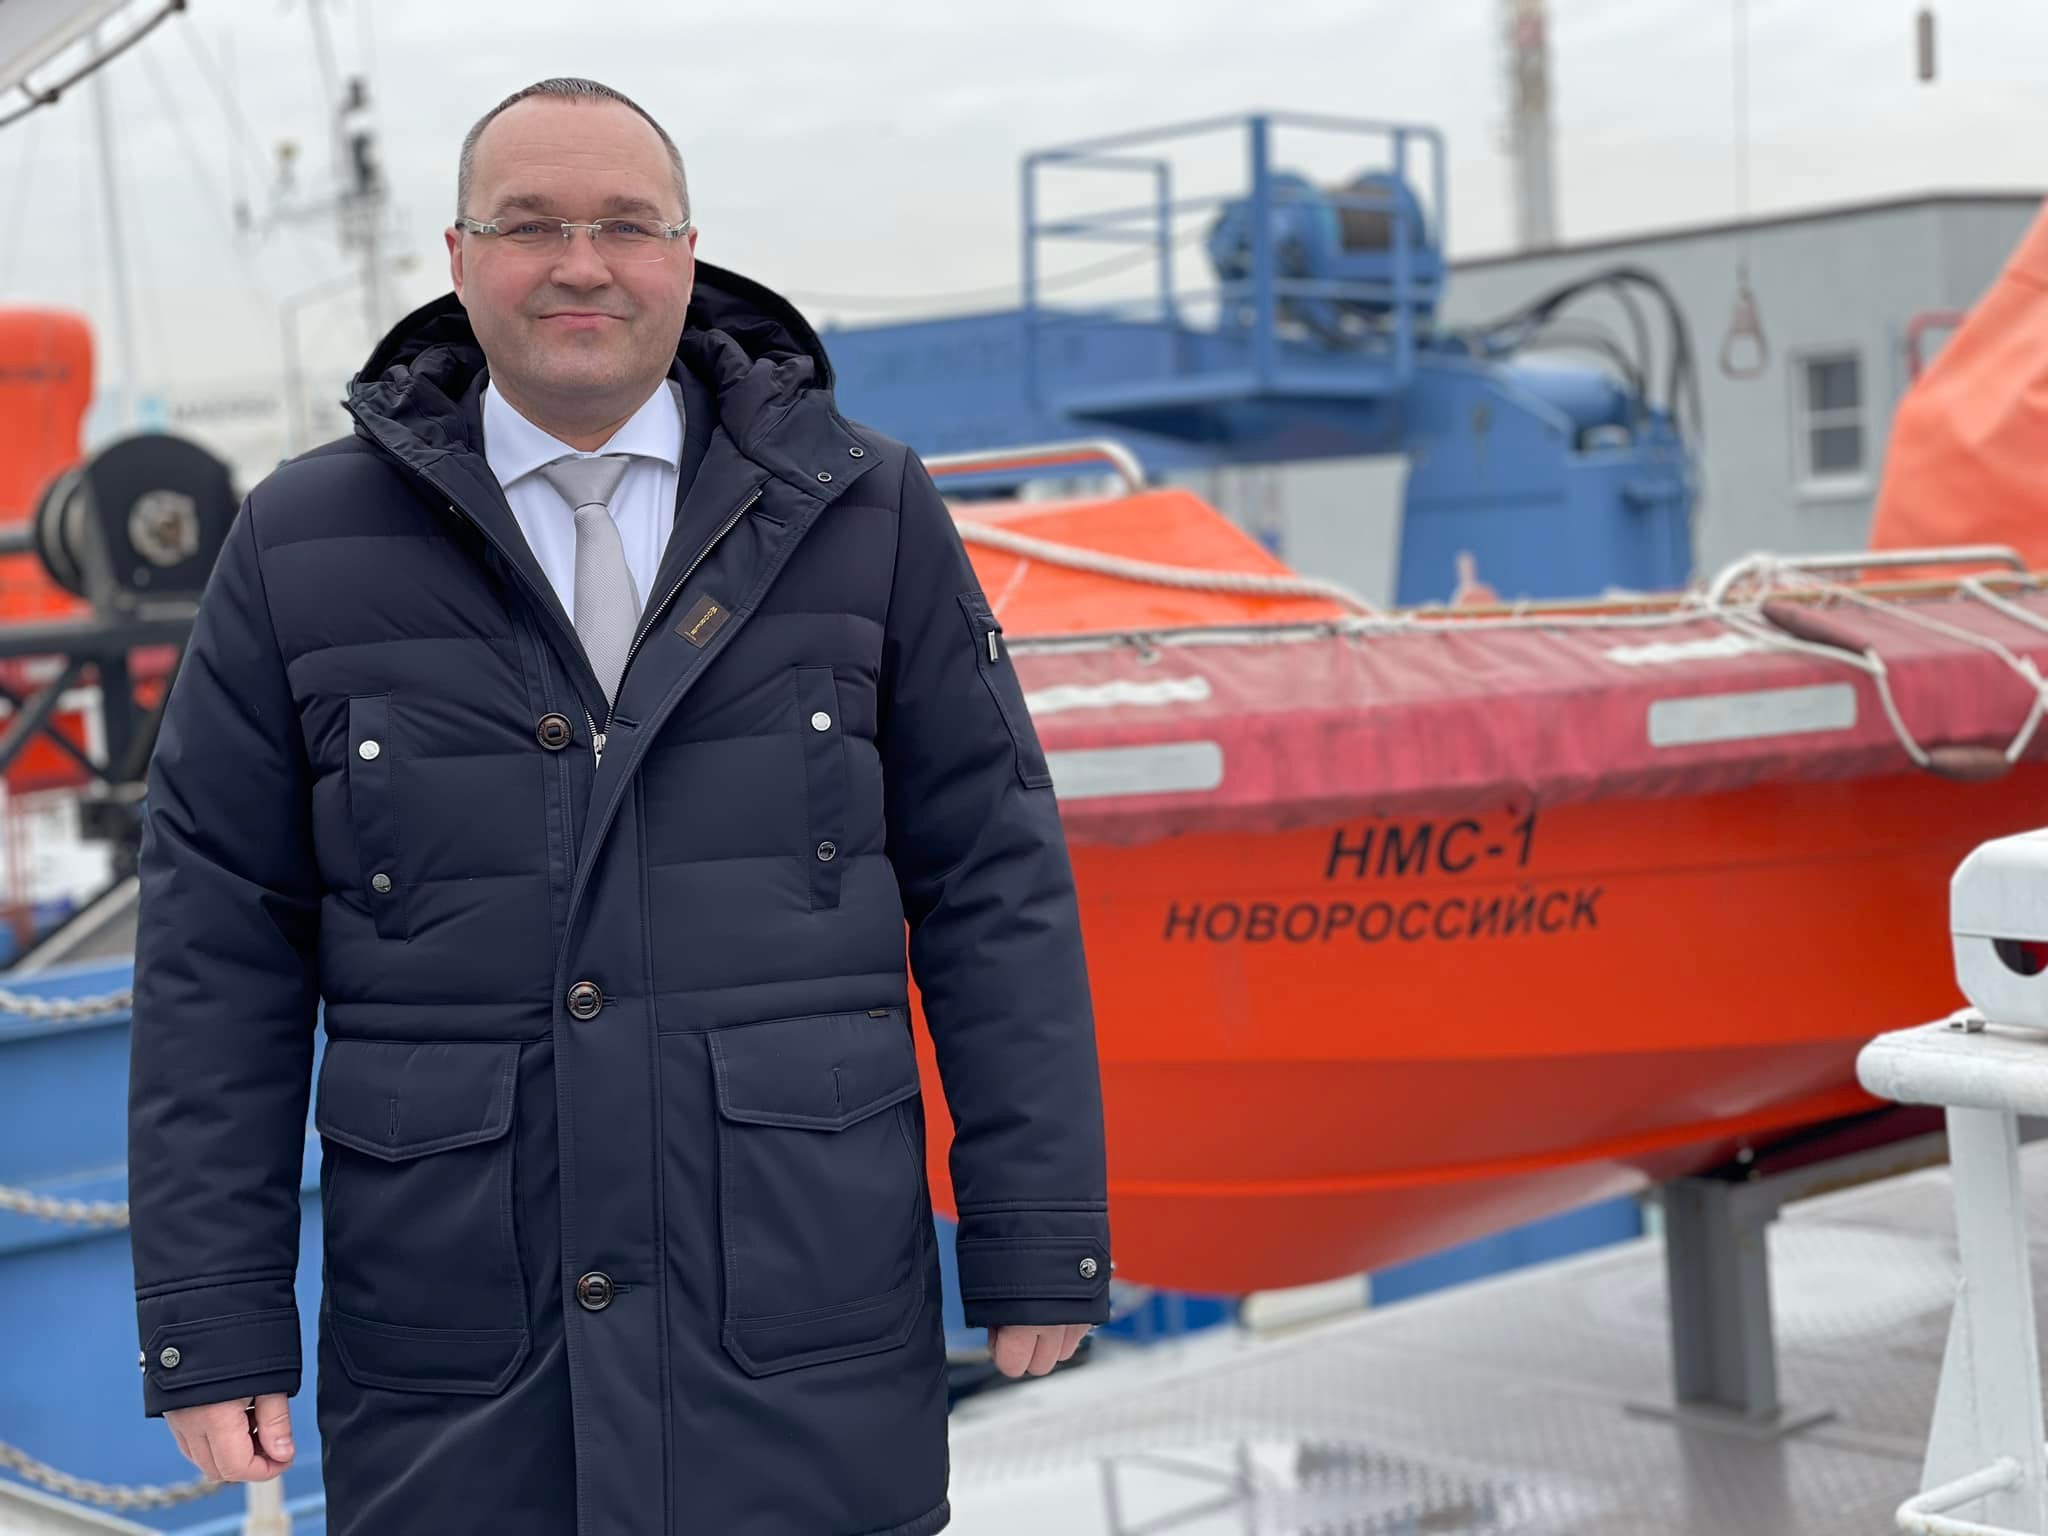 Новые высокотехнологичные суда обеспечат экологическую безопасность в порту Новороссийск